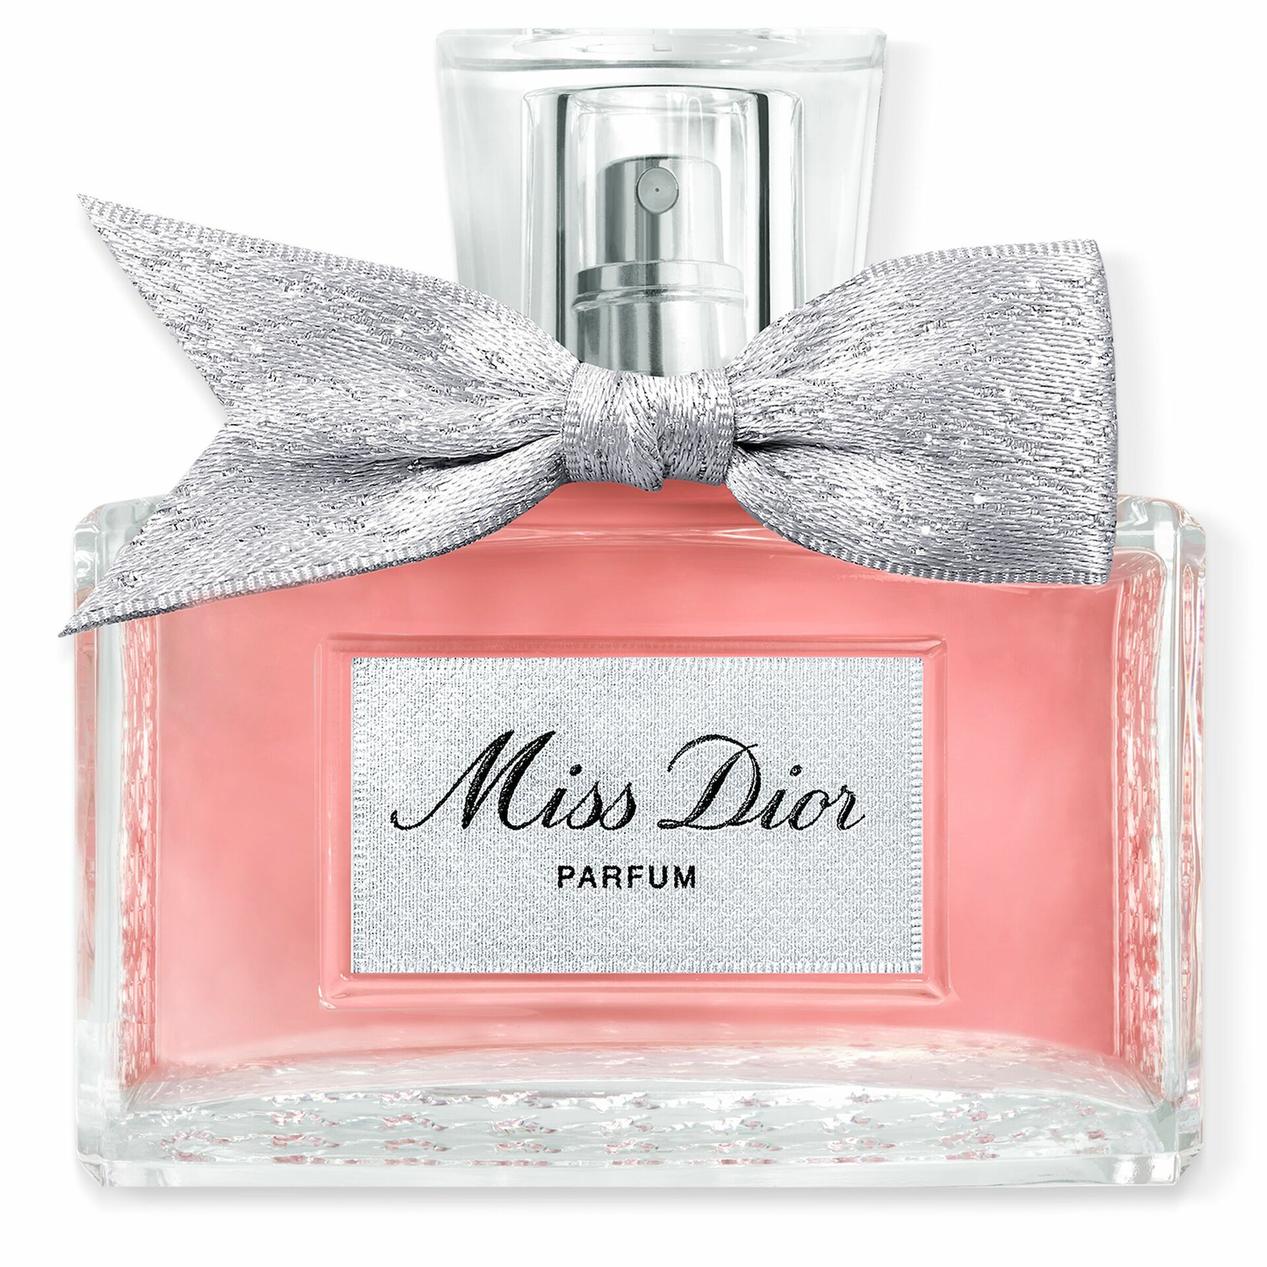 Miss Dior Parfum 35 ml för 990 kr på Kicks